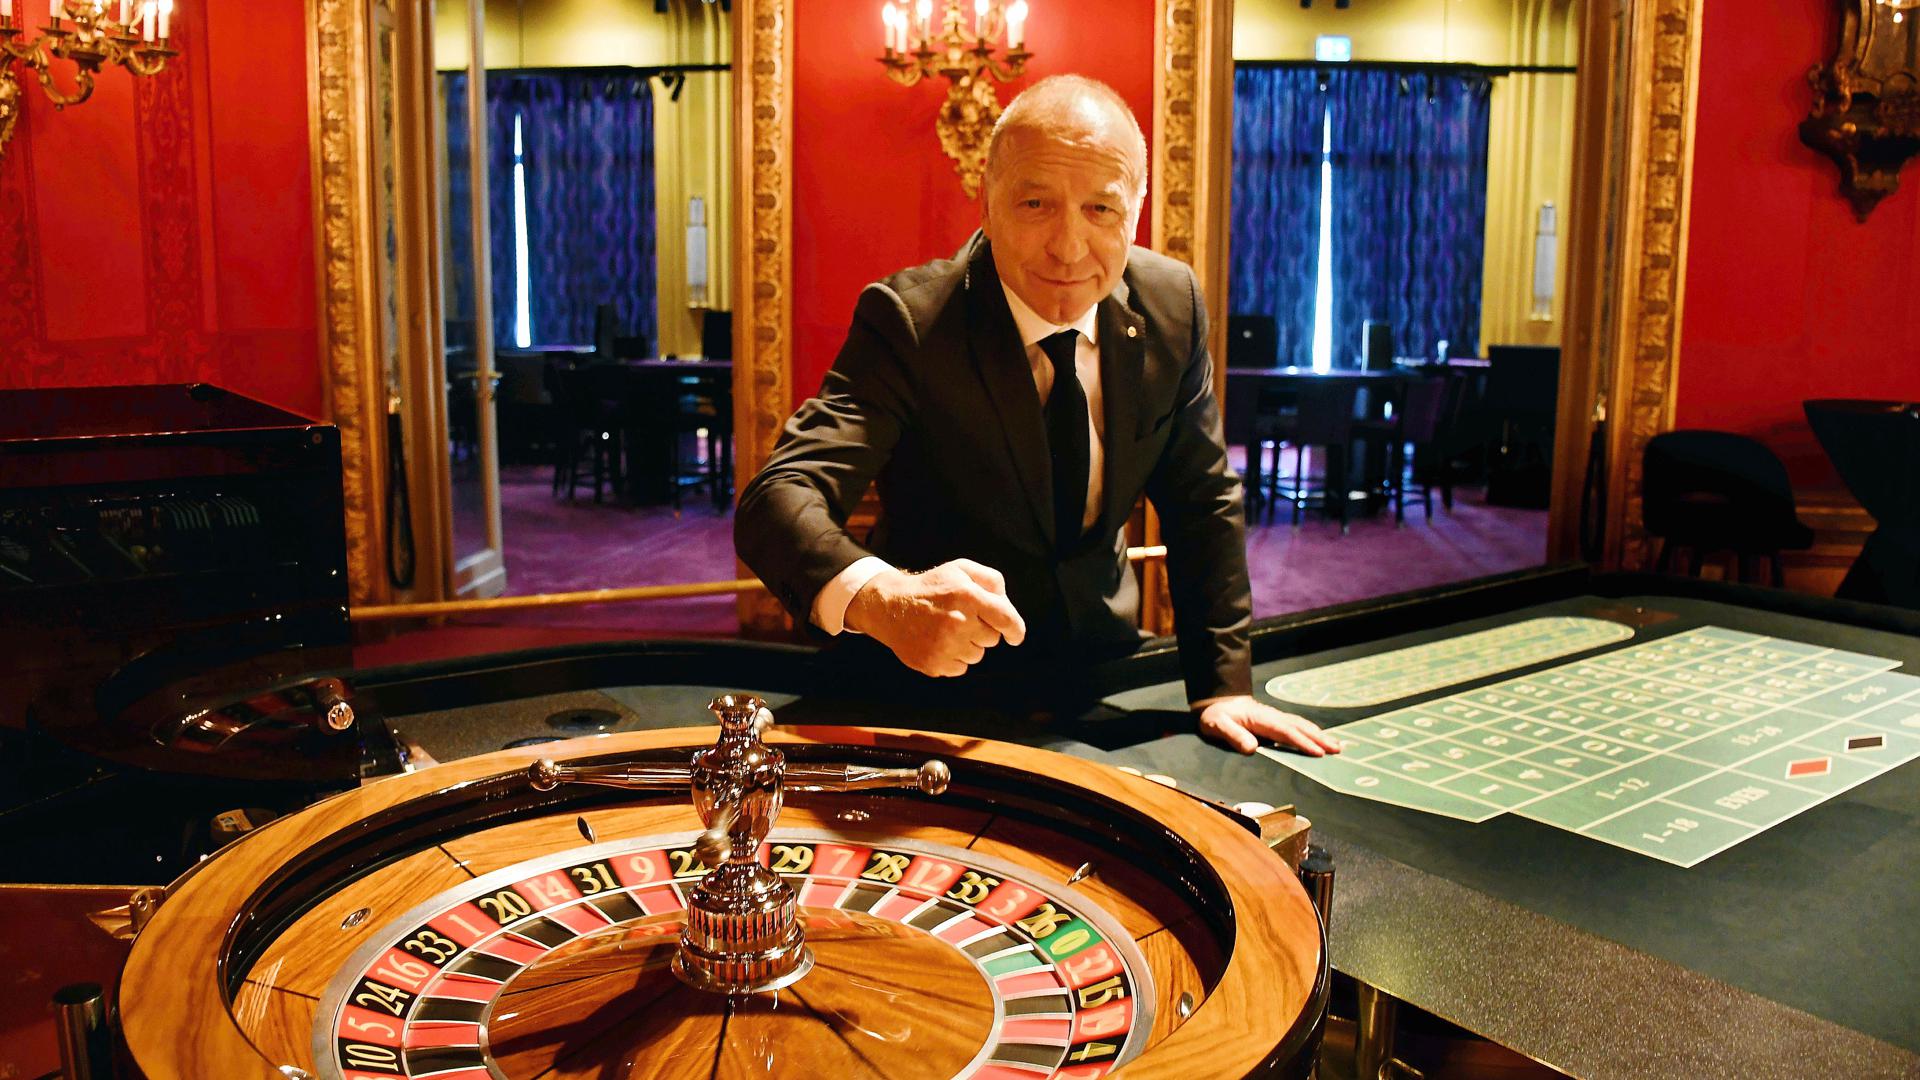 Thomas Schindler steht am Roulette-Tisch.